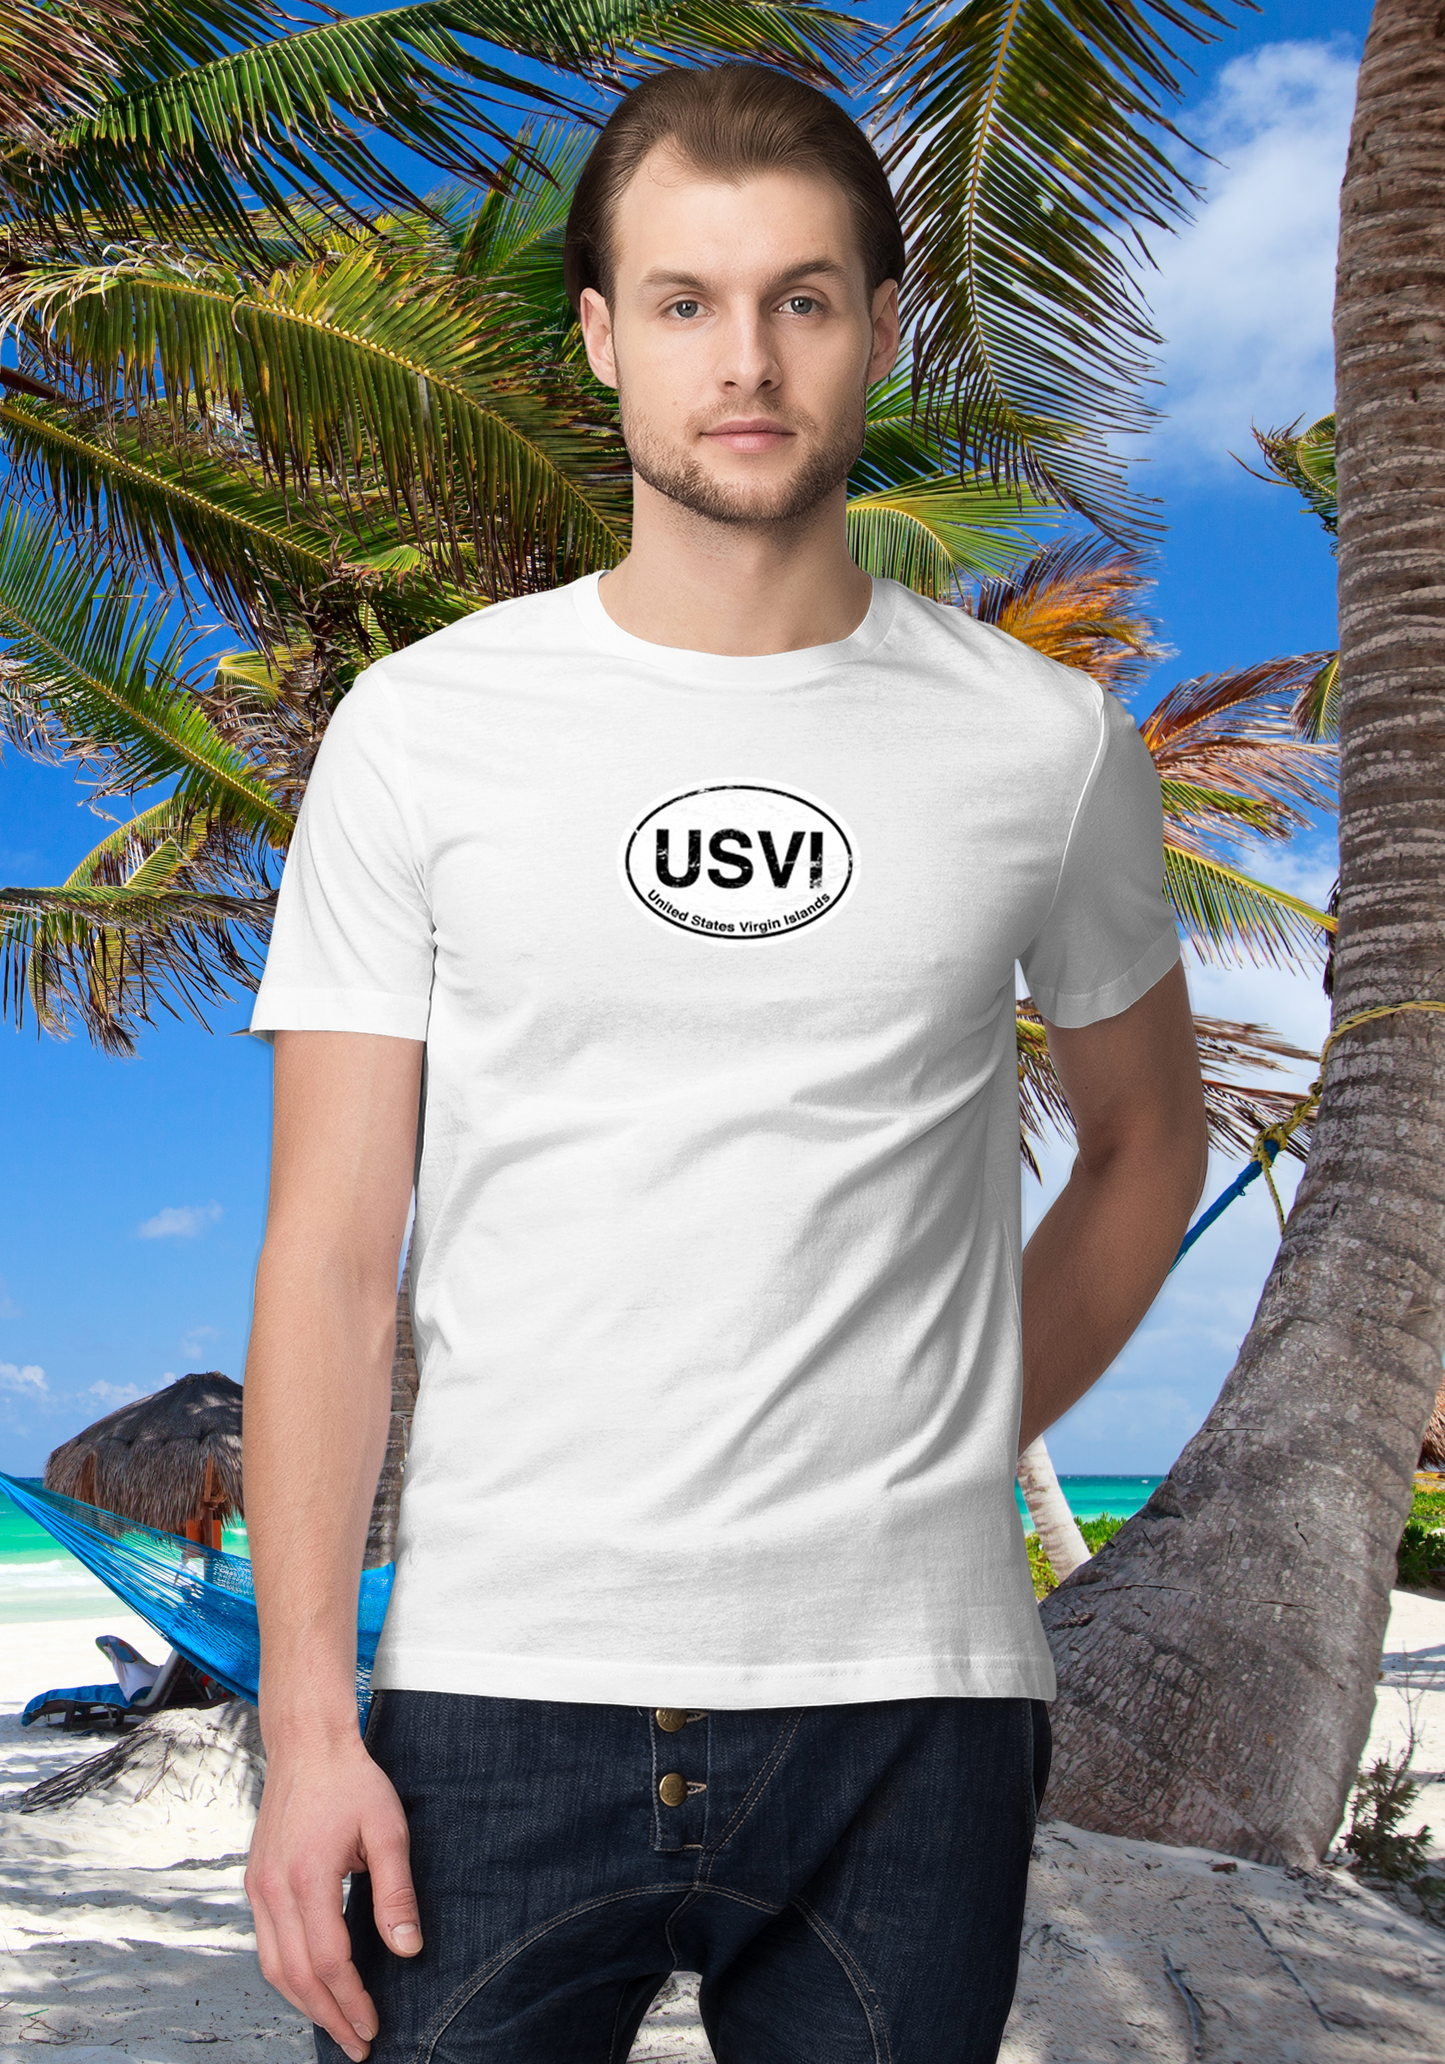 USVI Men's Classic T-Shirt Souvenirs - My Destination Location